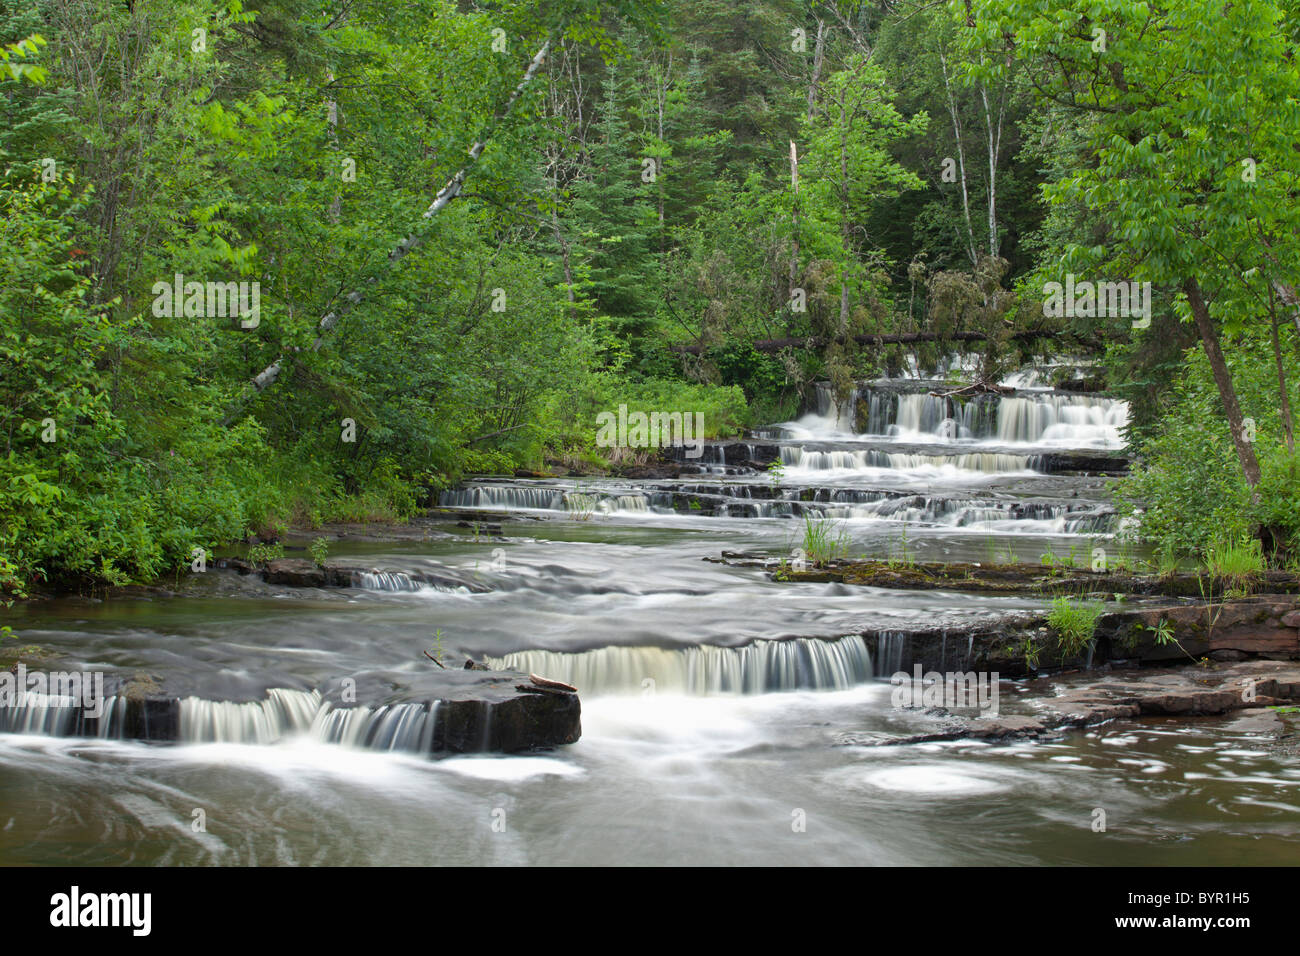 cascading falls along a creek; thunder bay, ontario, canada Stock Photo